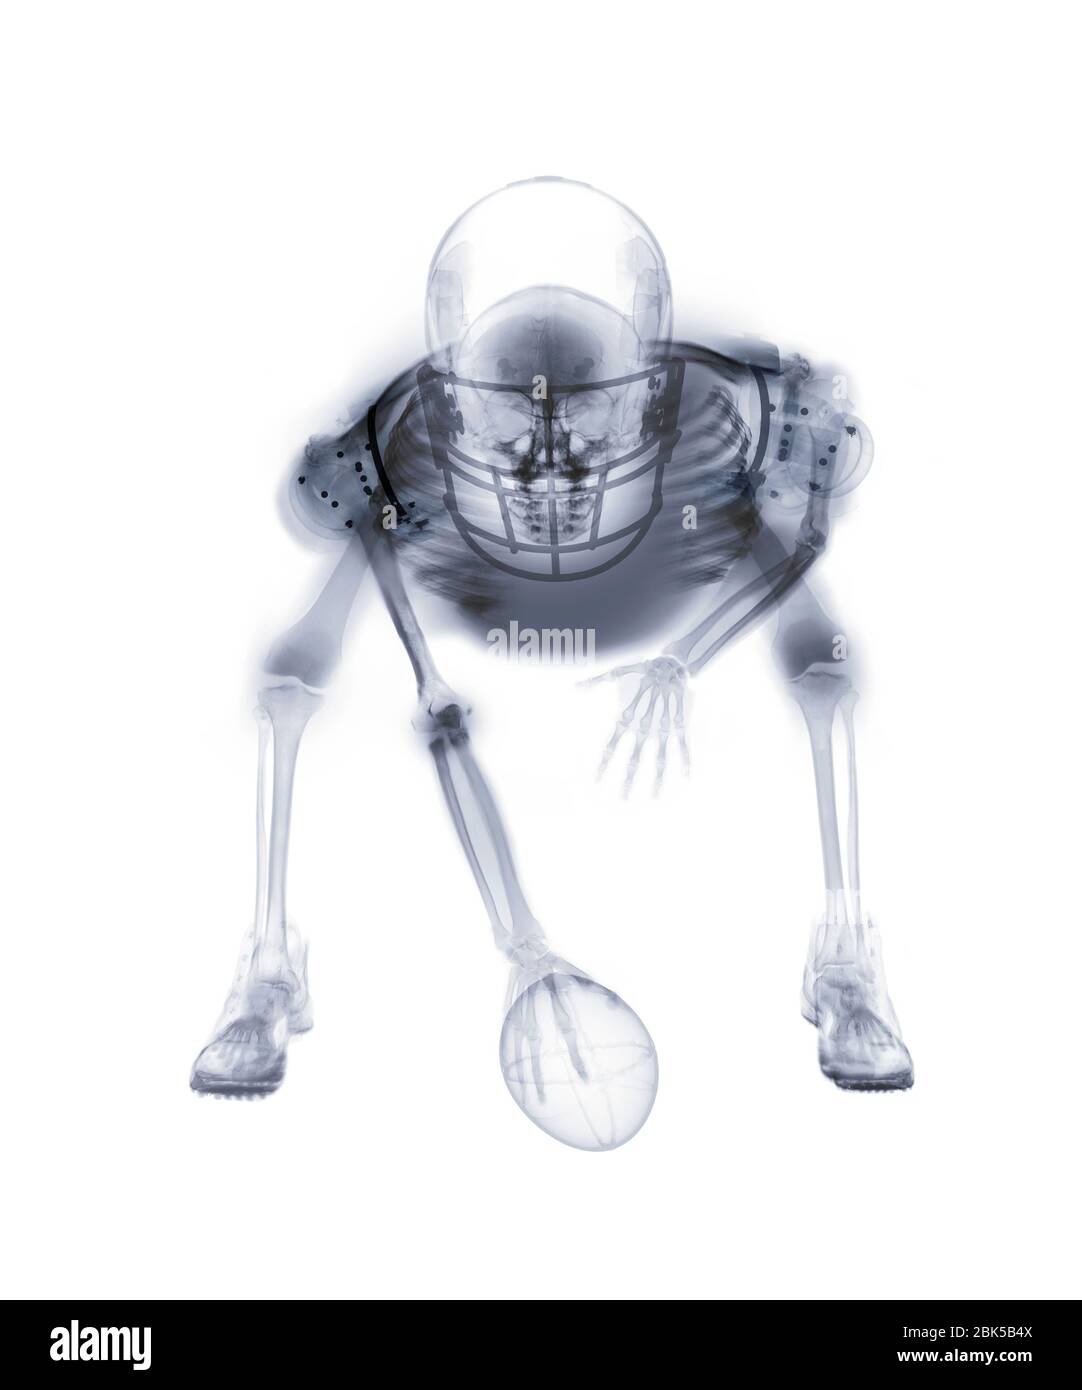 Squelette de joueur de football américain, radiographie. Banque D'Images